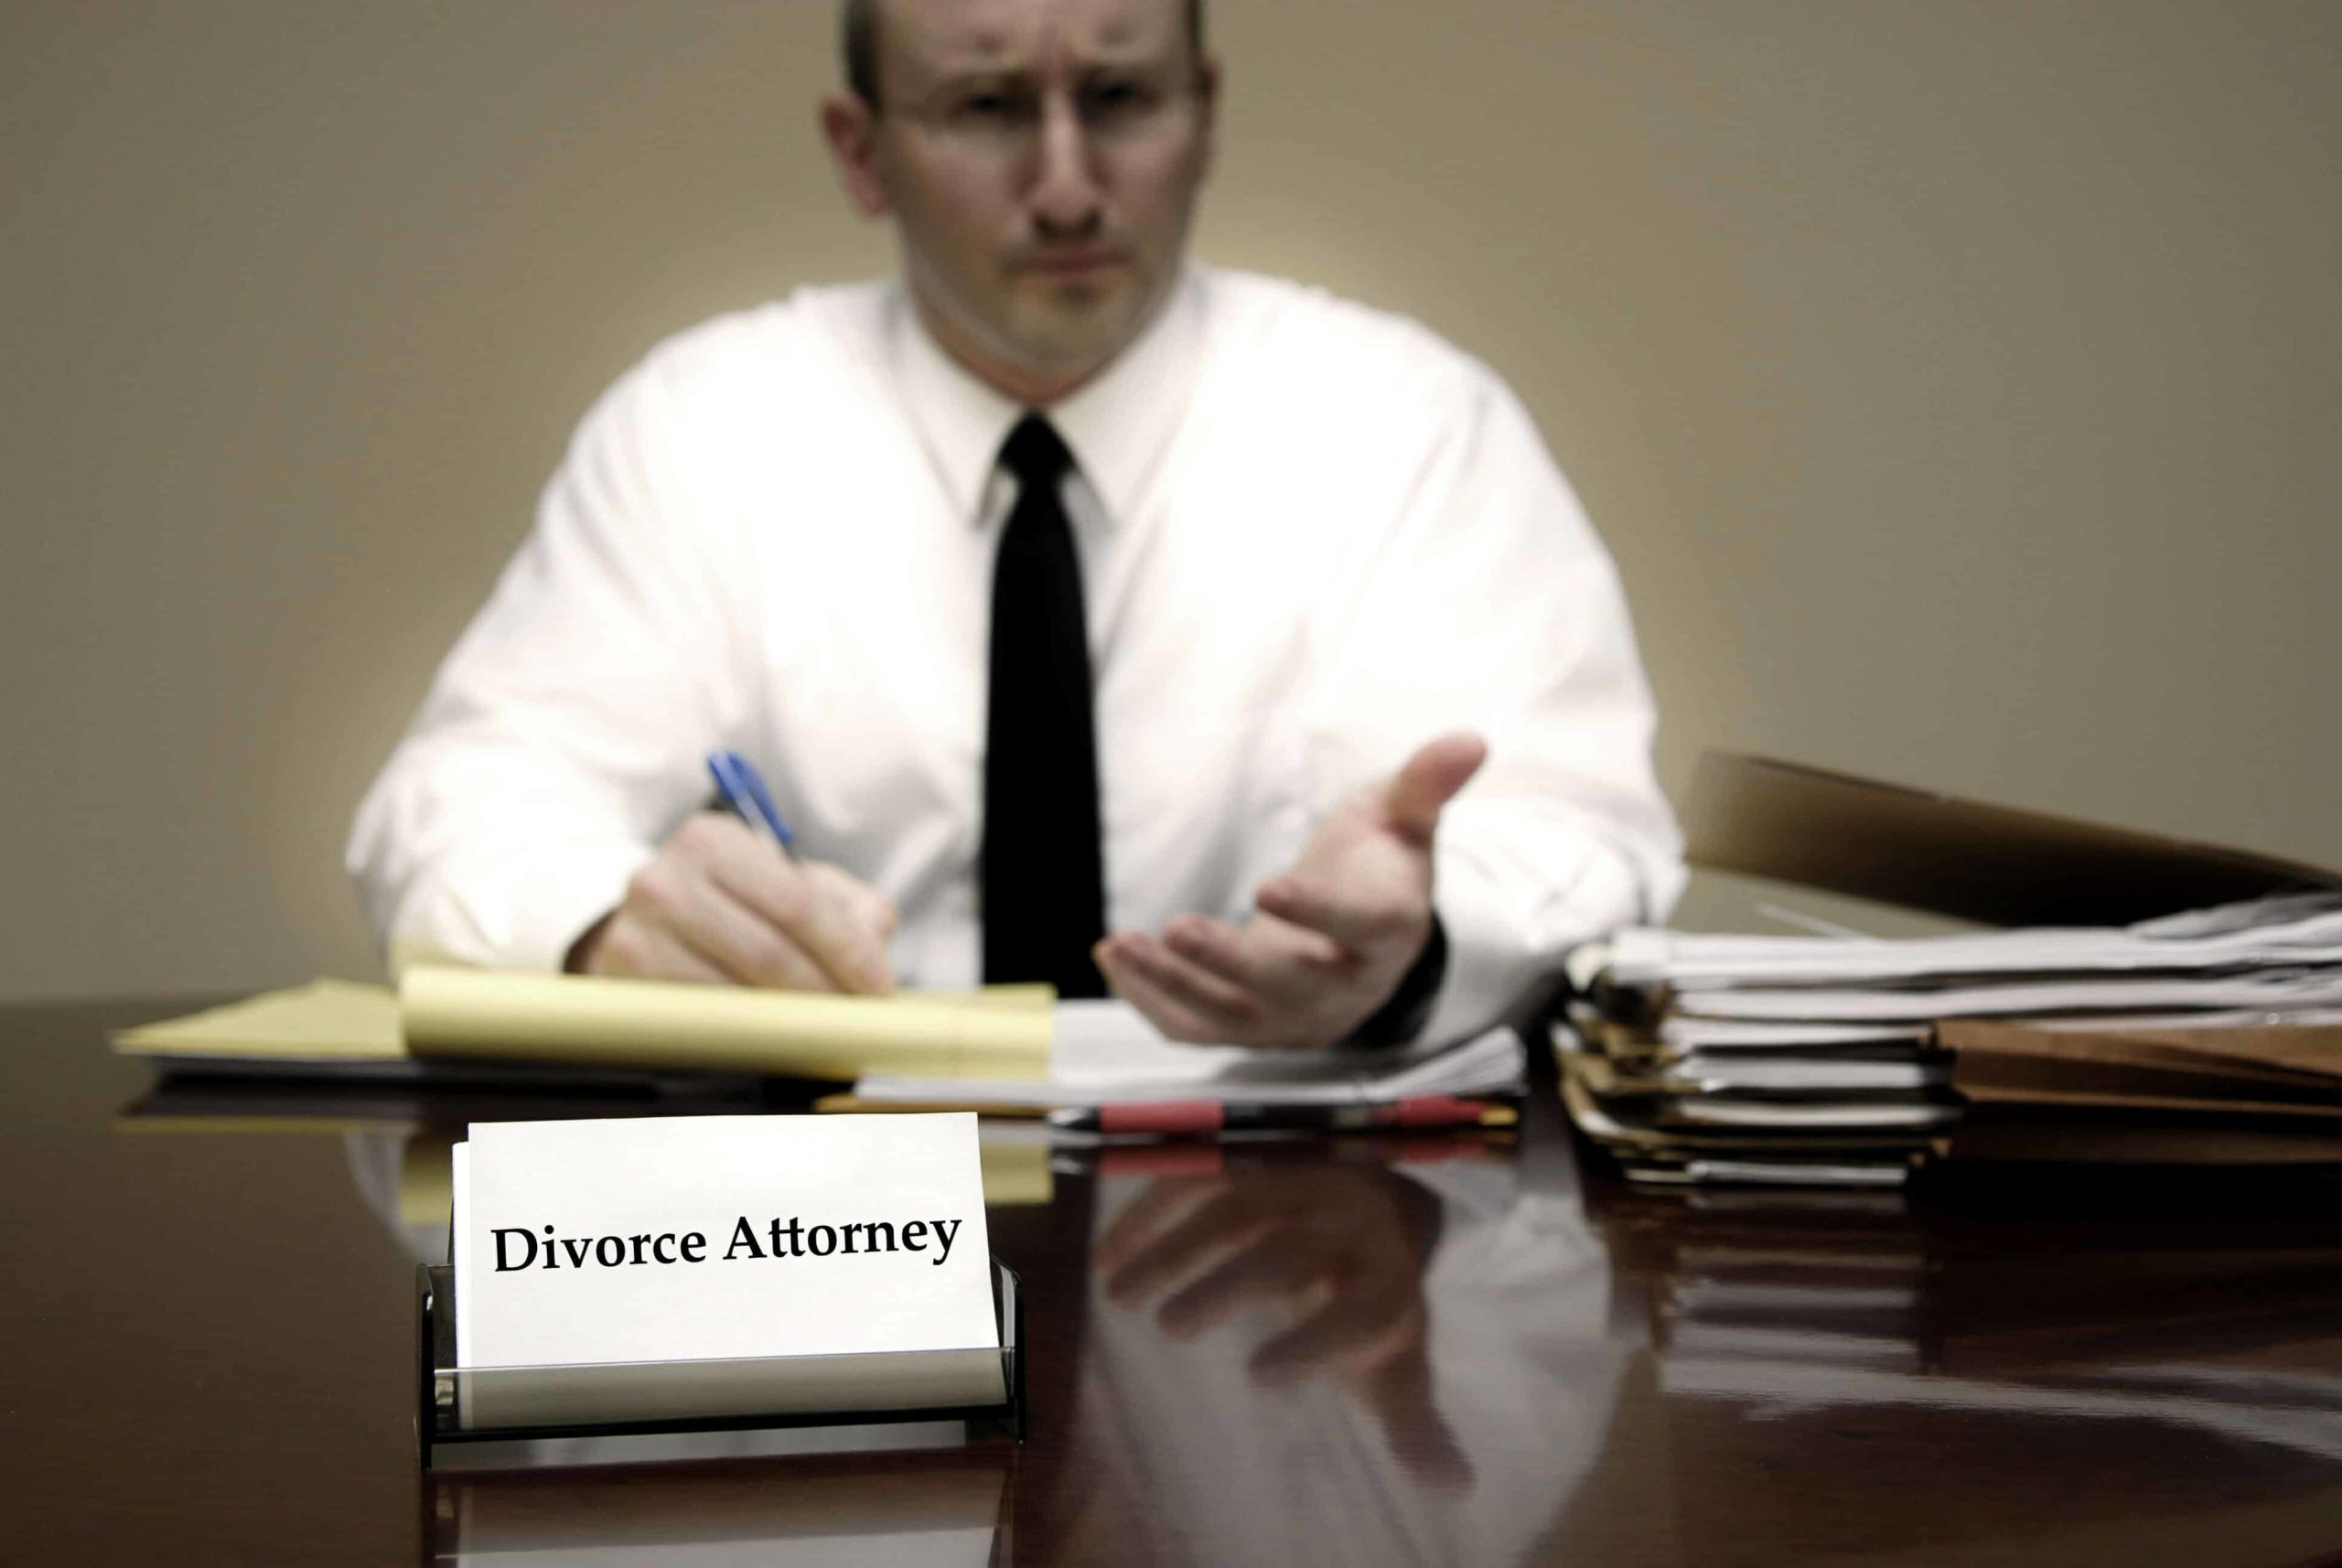 Divorce attorney advising client.